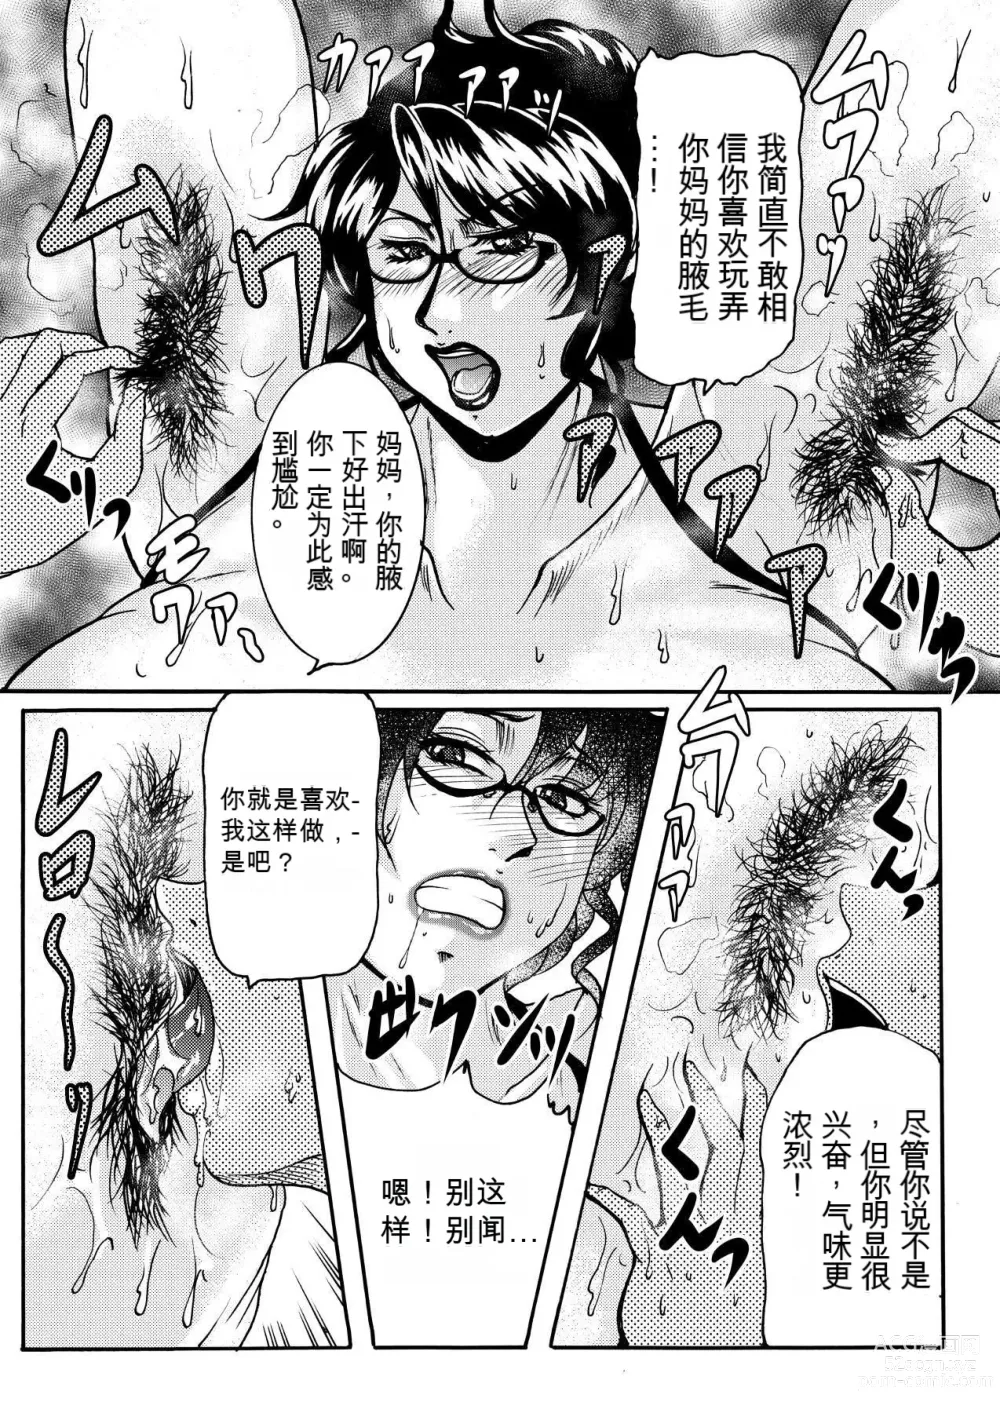 Page 5 of manga NO CARE